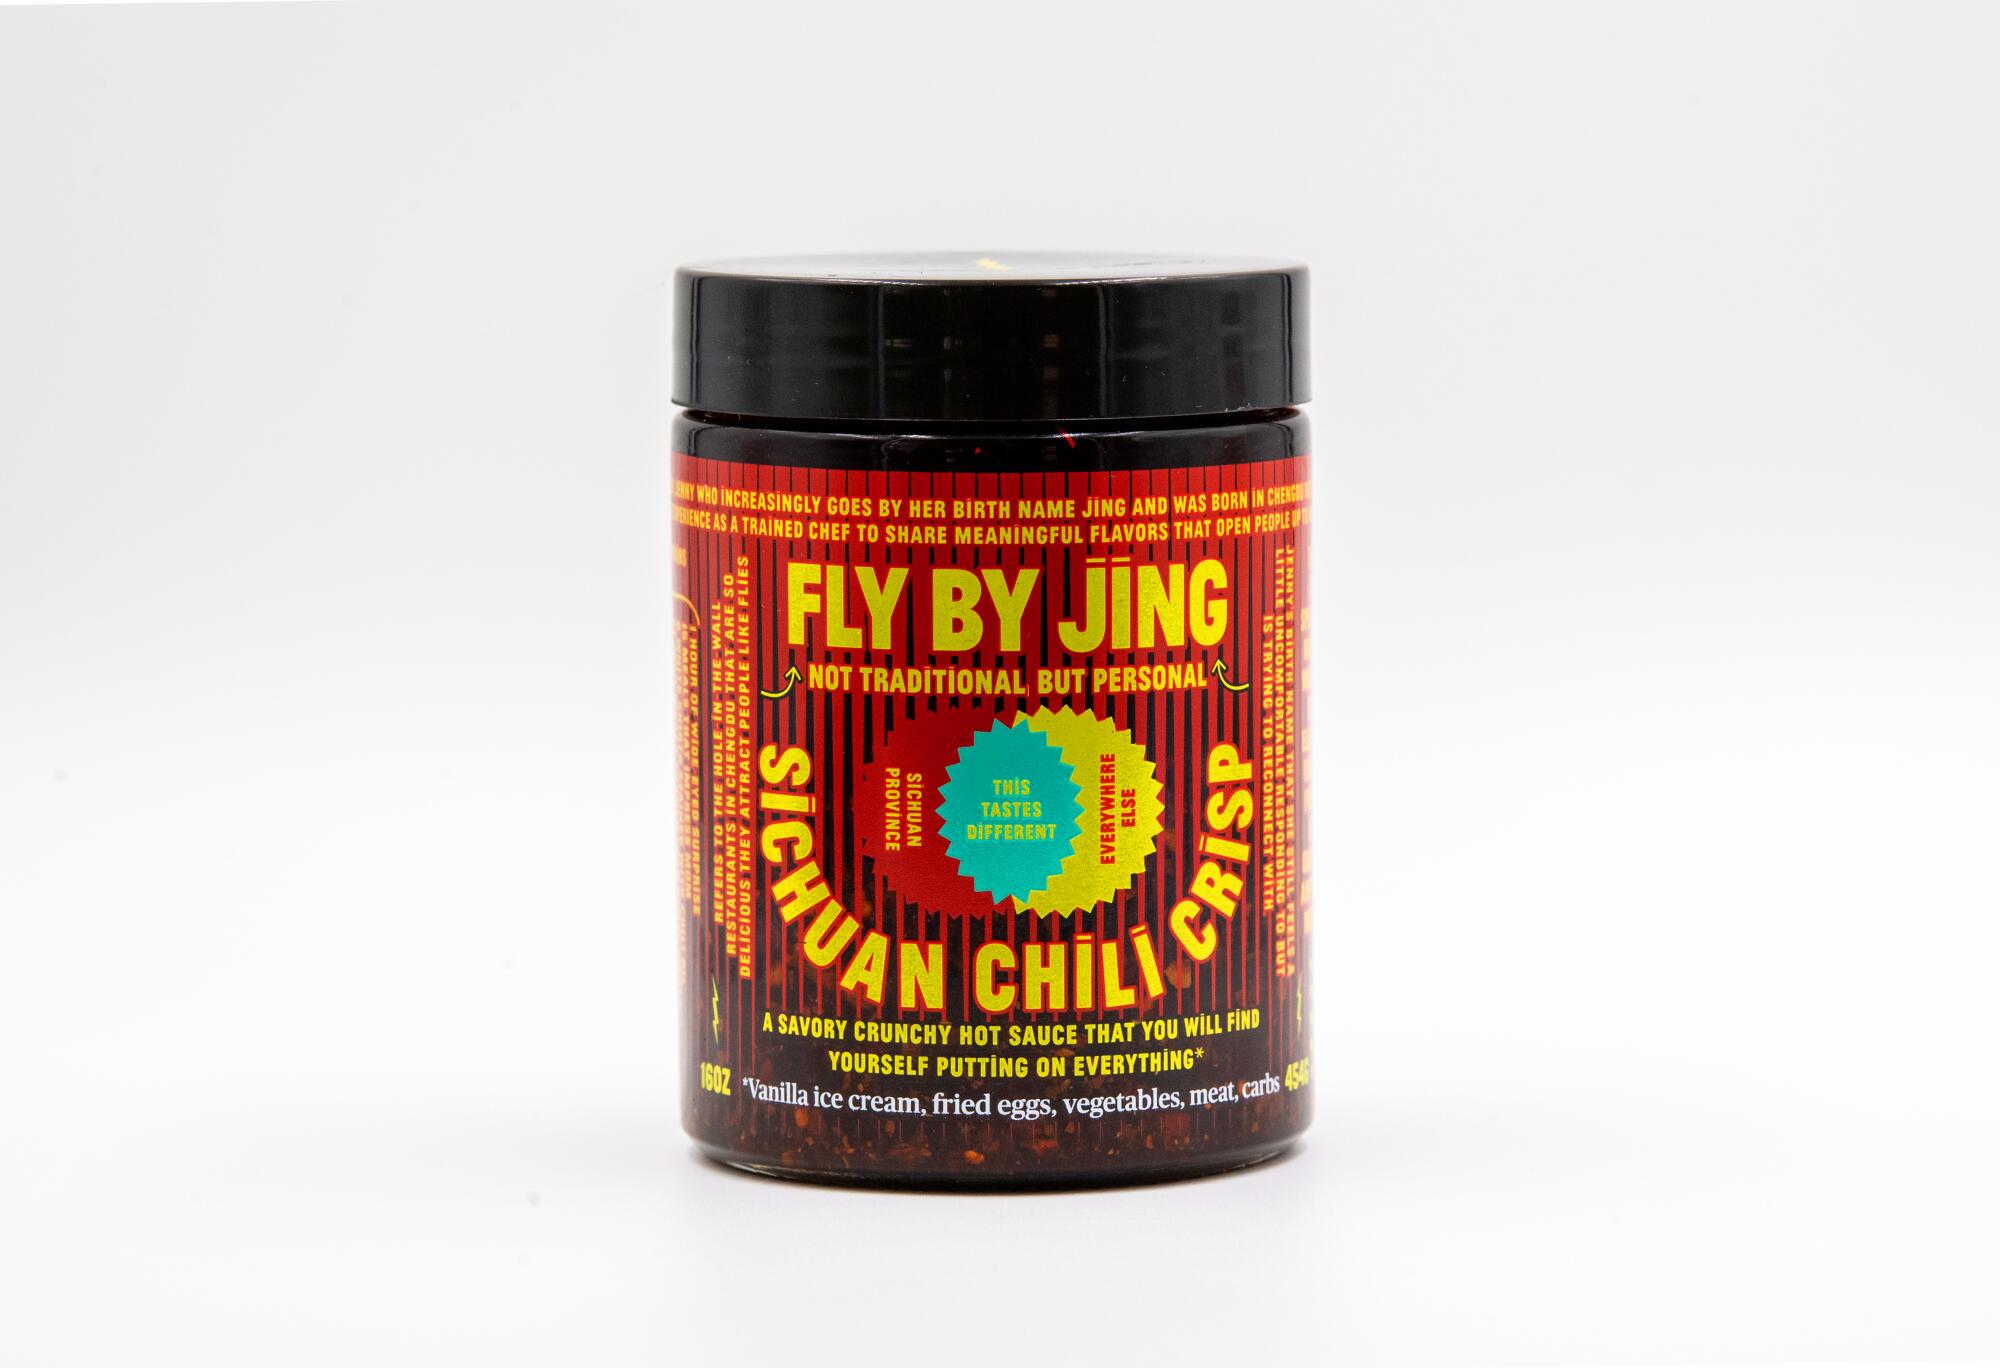 Un pot de Fly de Jing Sichuan Chili Crisp de Jing Gao.